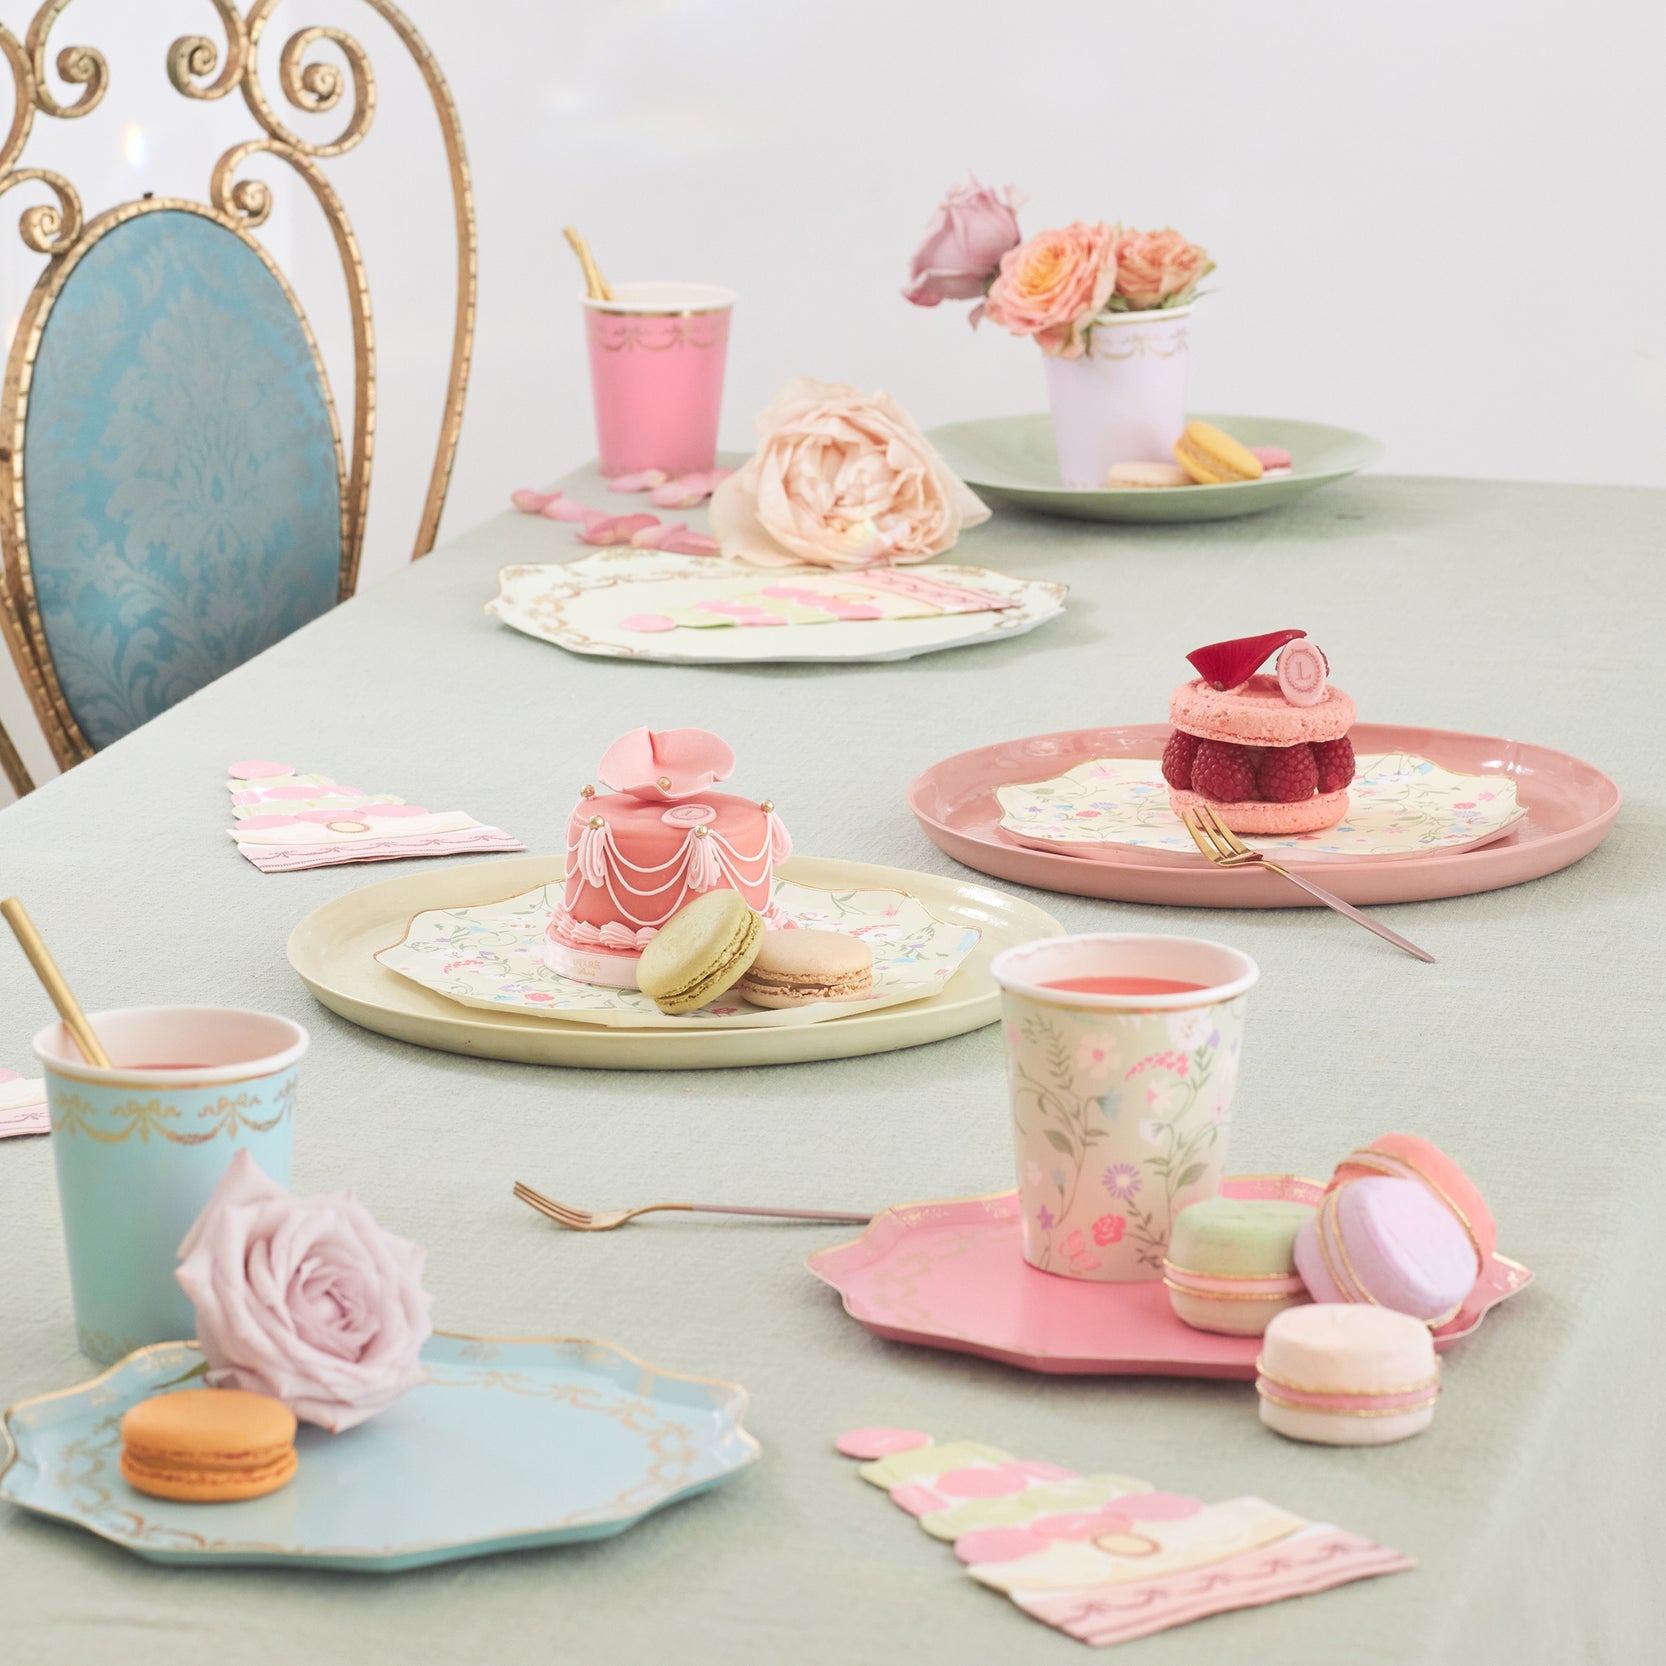 A table full of plates, cups, and Meri Meri Ladurée Paris Macaron Surprise Balls.